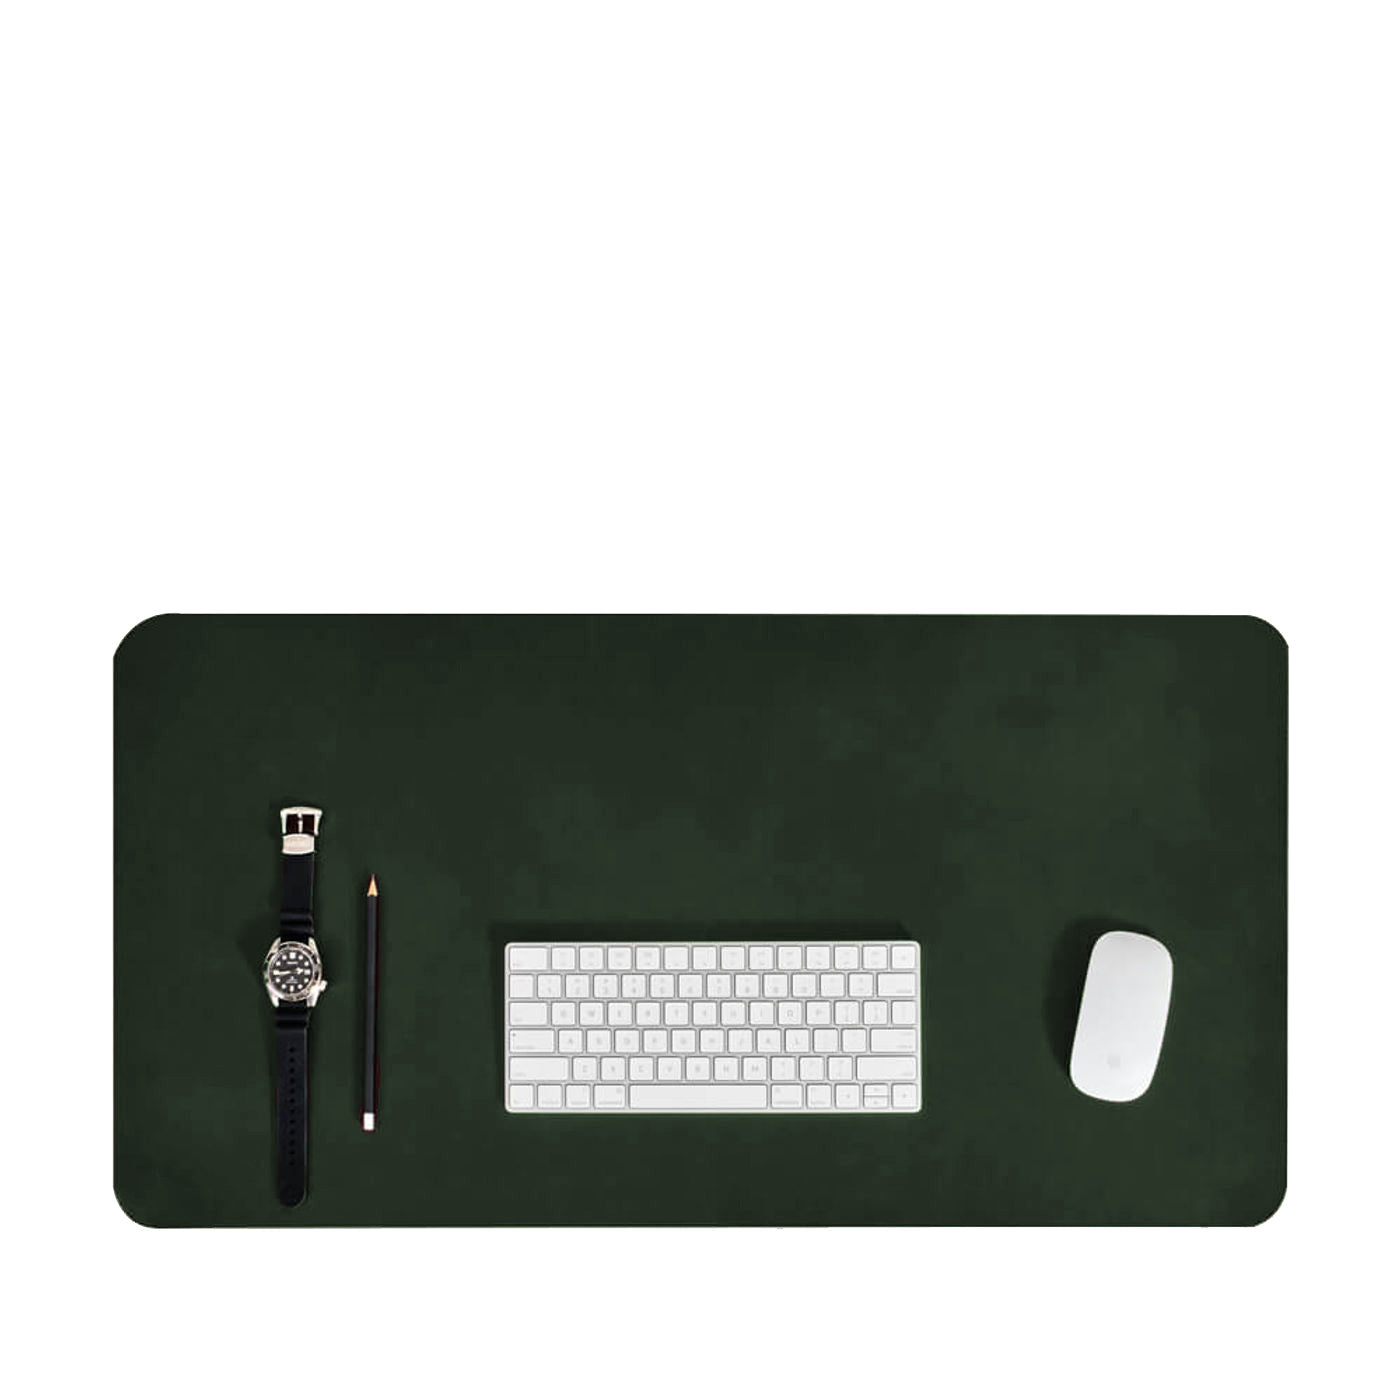 Olive Green Vegan Leather Desk Pad